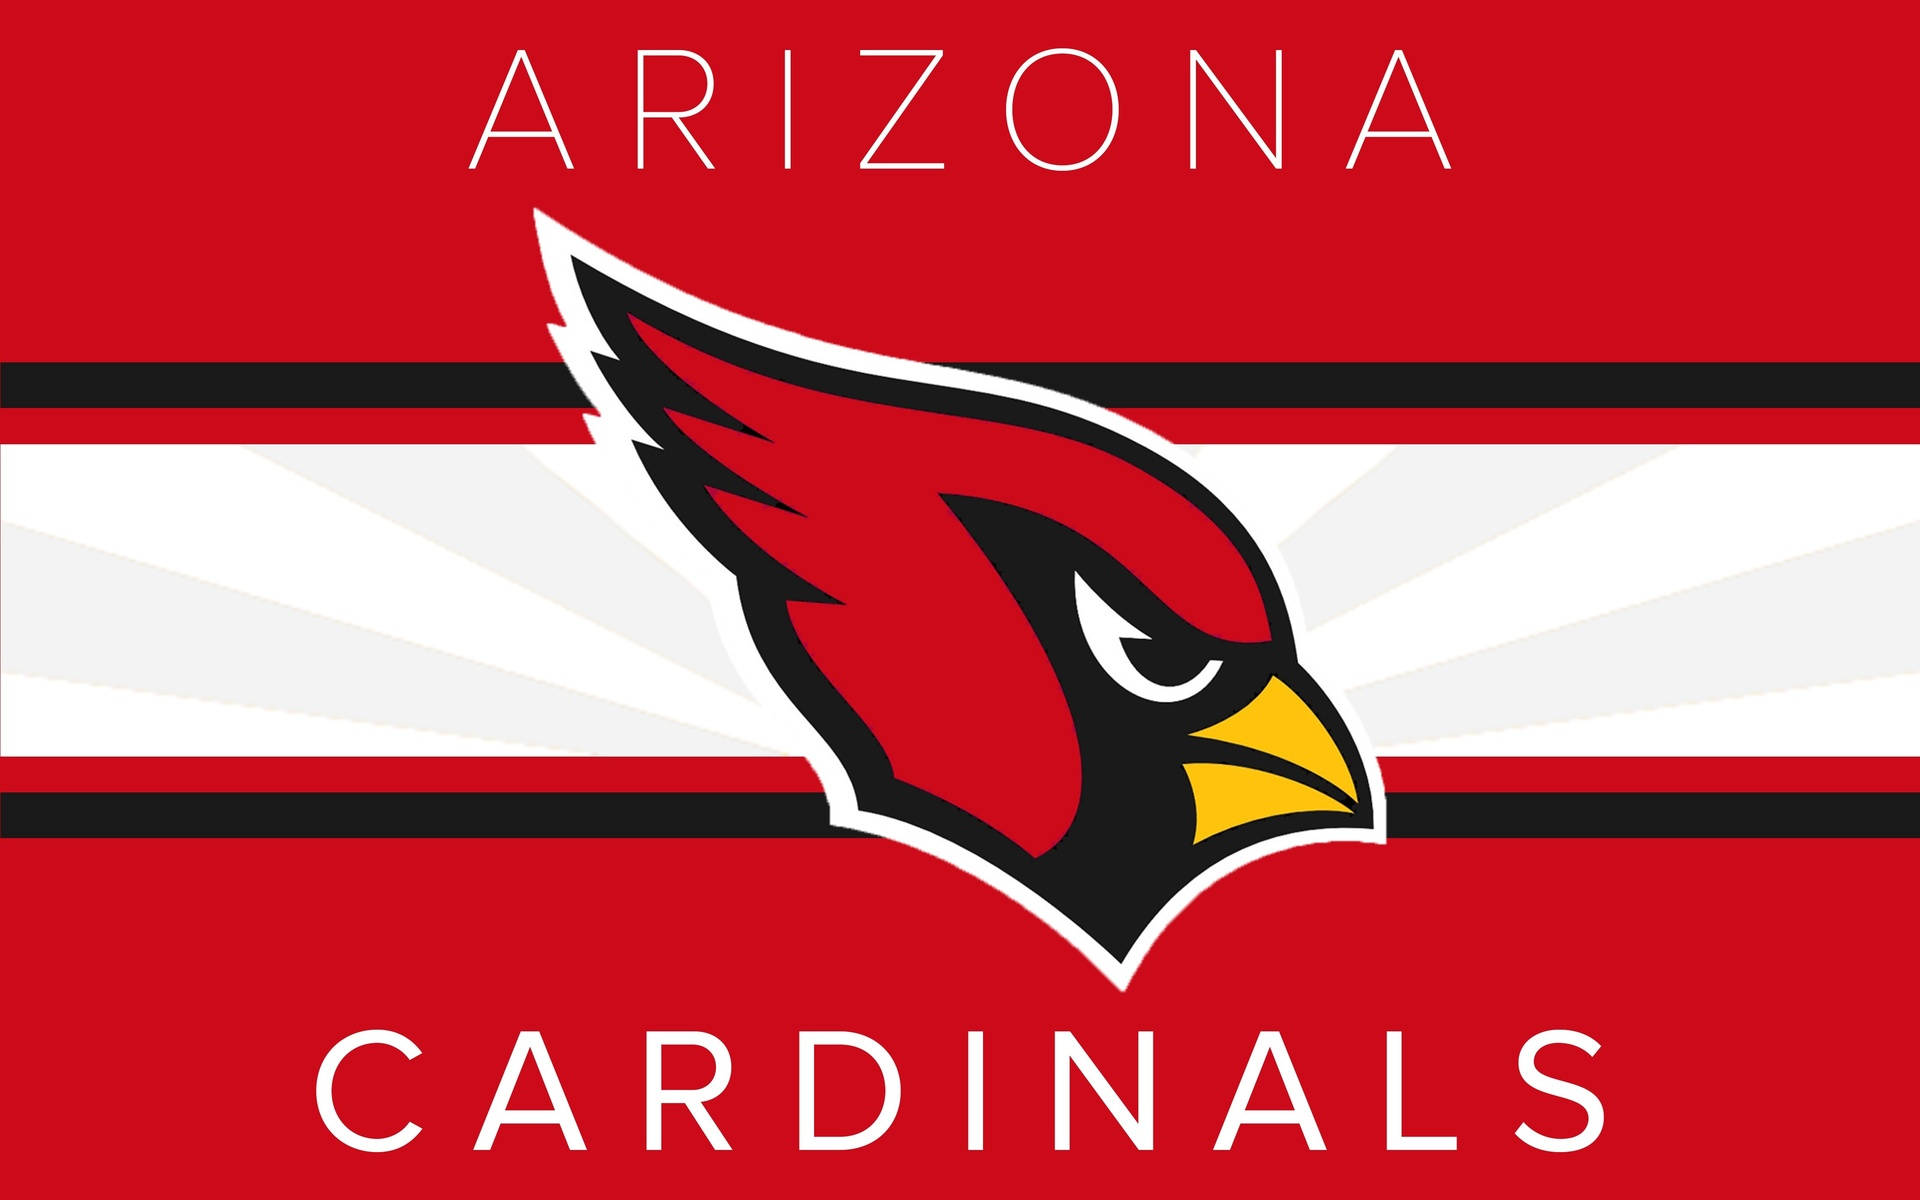 Arizona Cardinals Big Red Flag Wallpaper